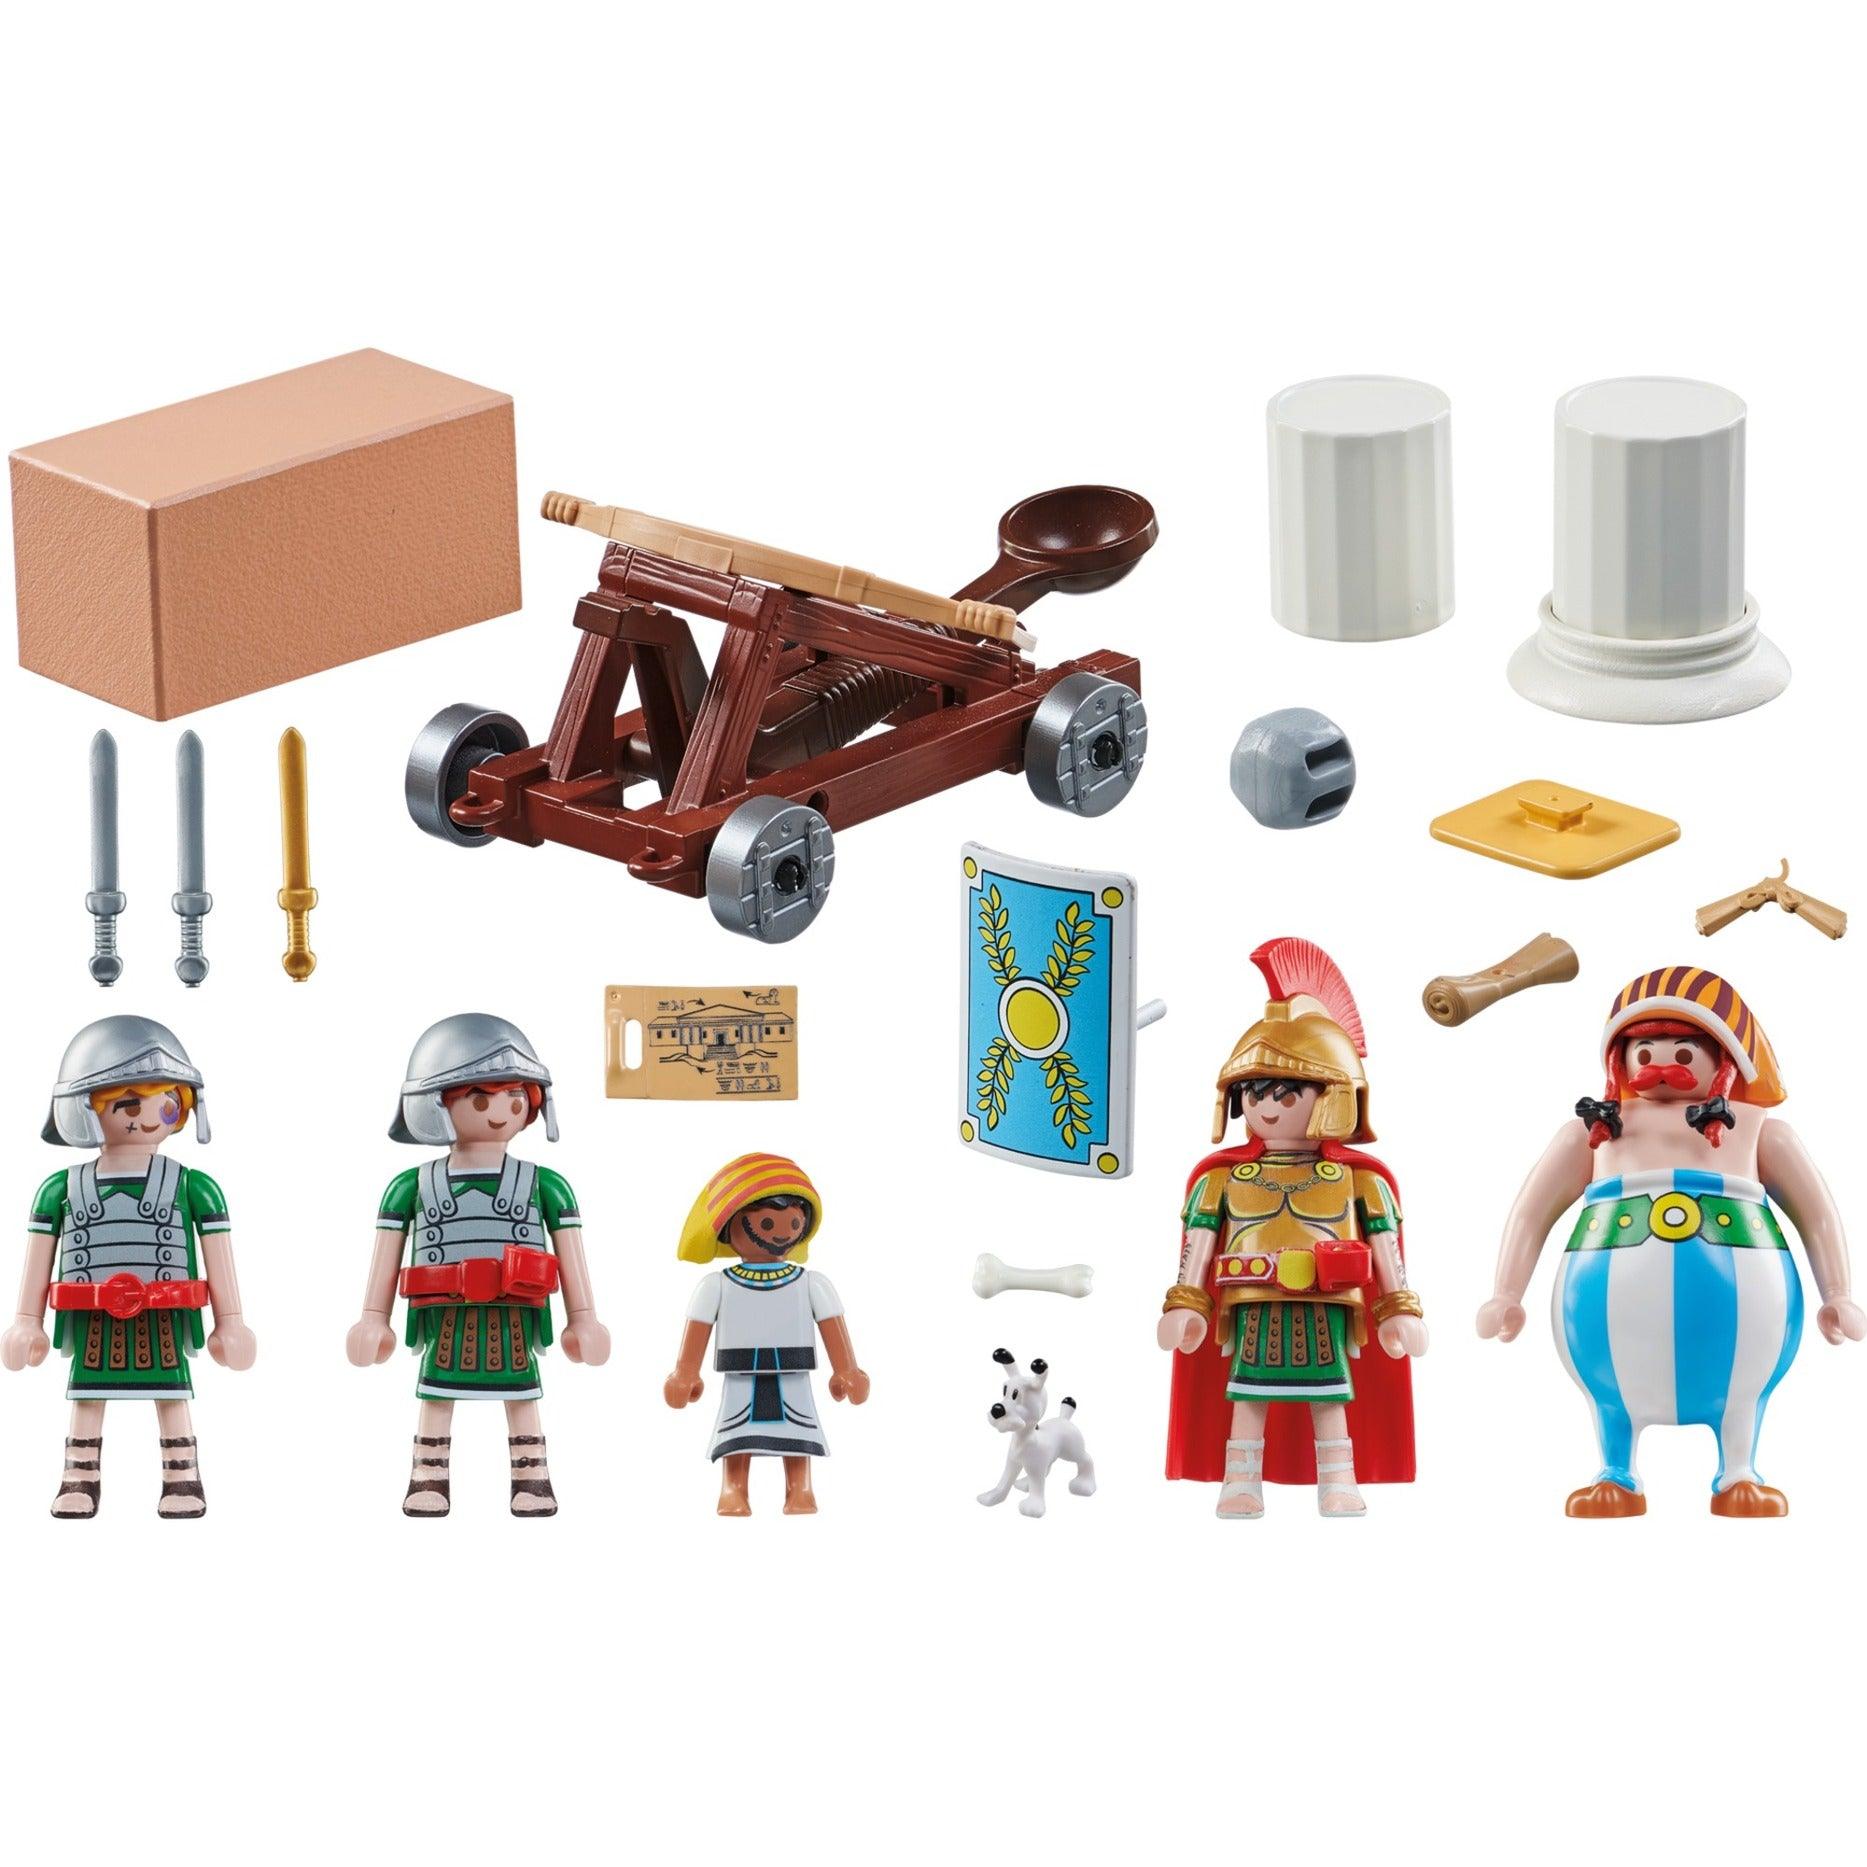 Obelix de Playmobil - Playmopiezas